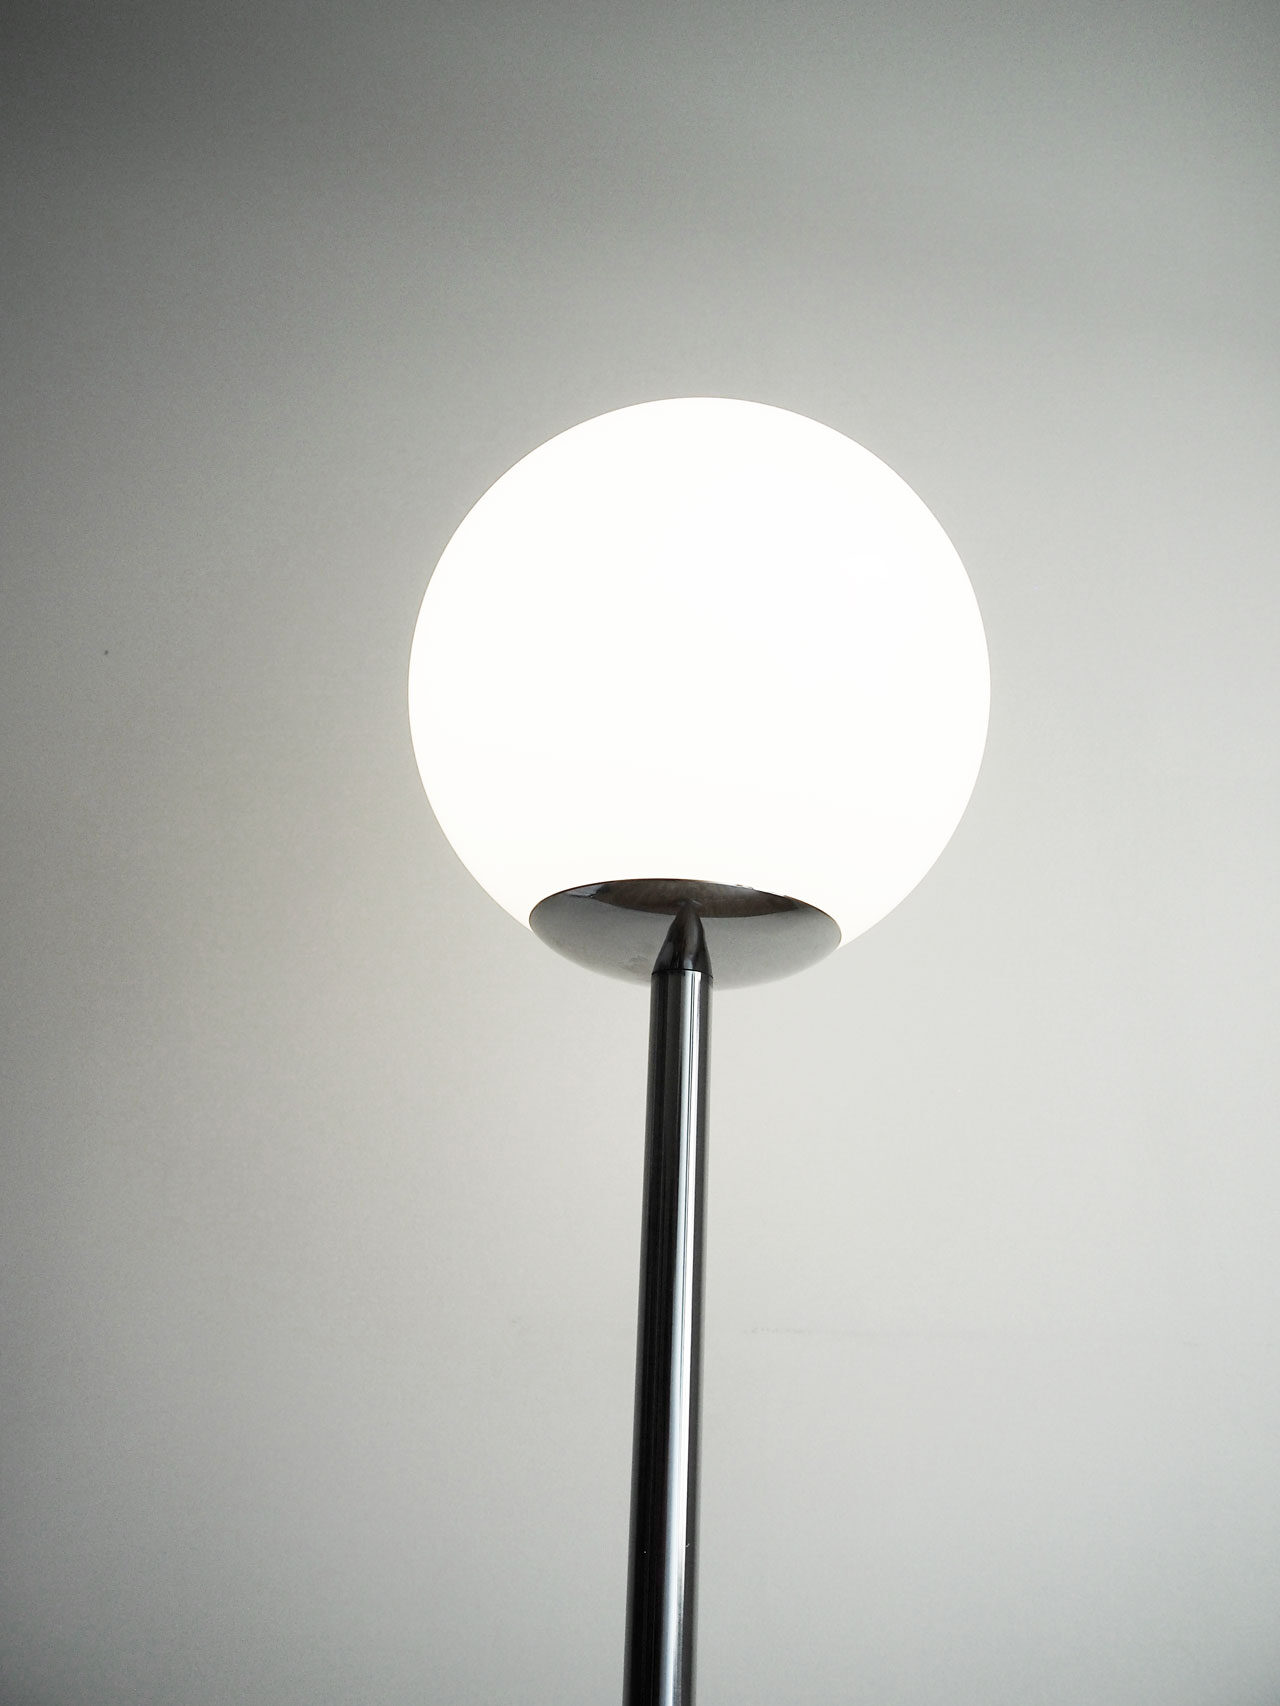 DIY floor lamp designed by Aandersson